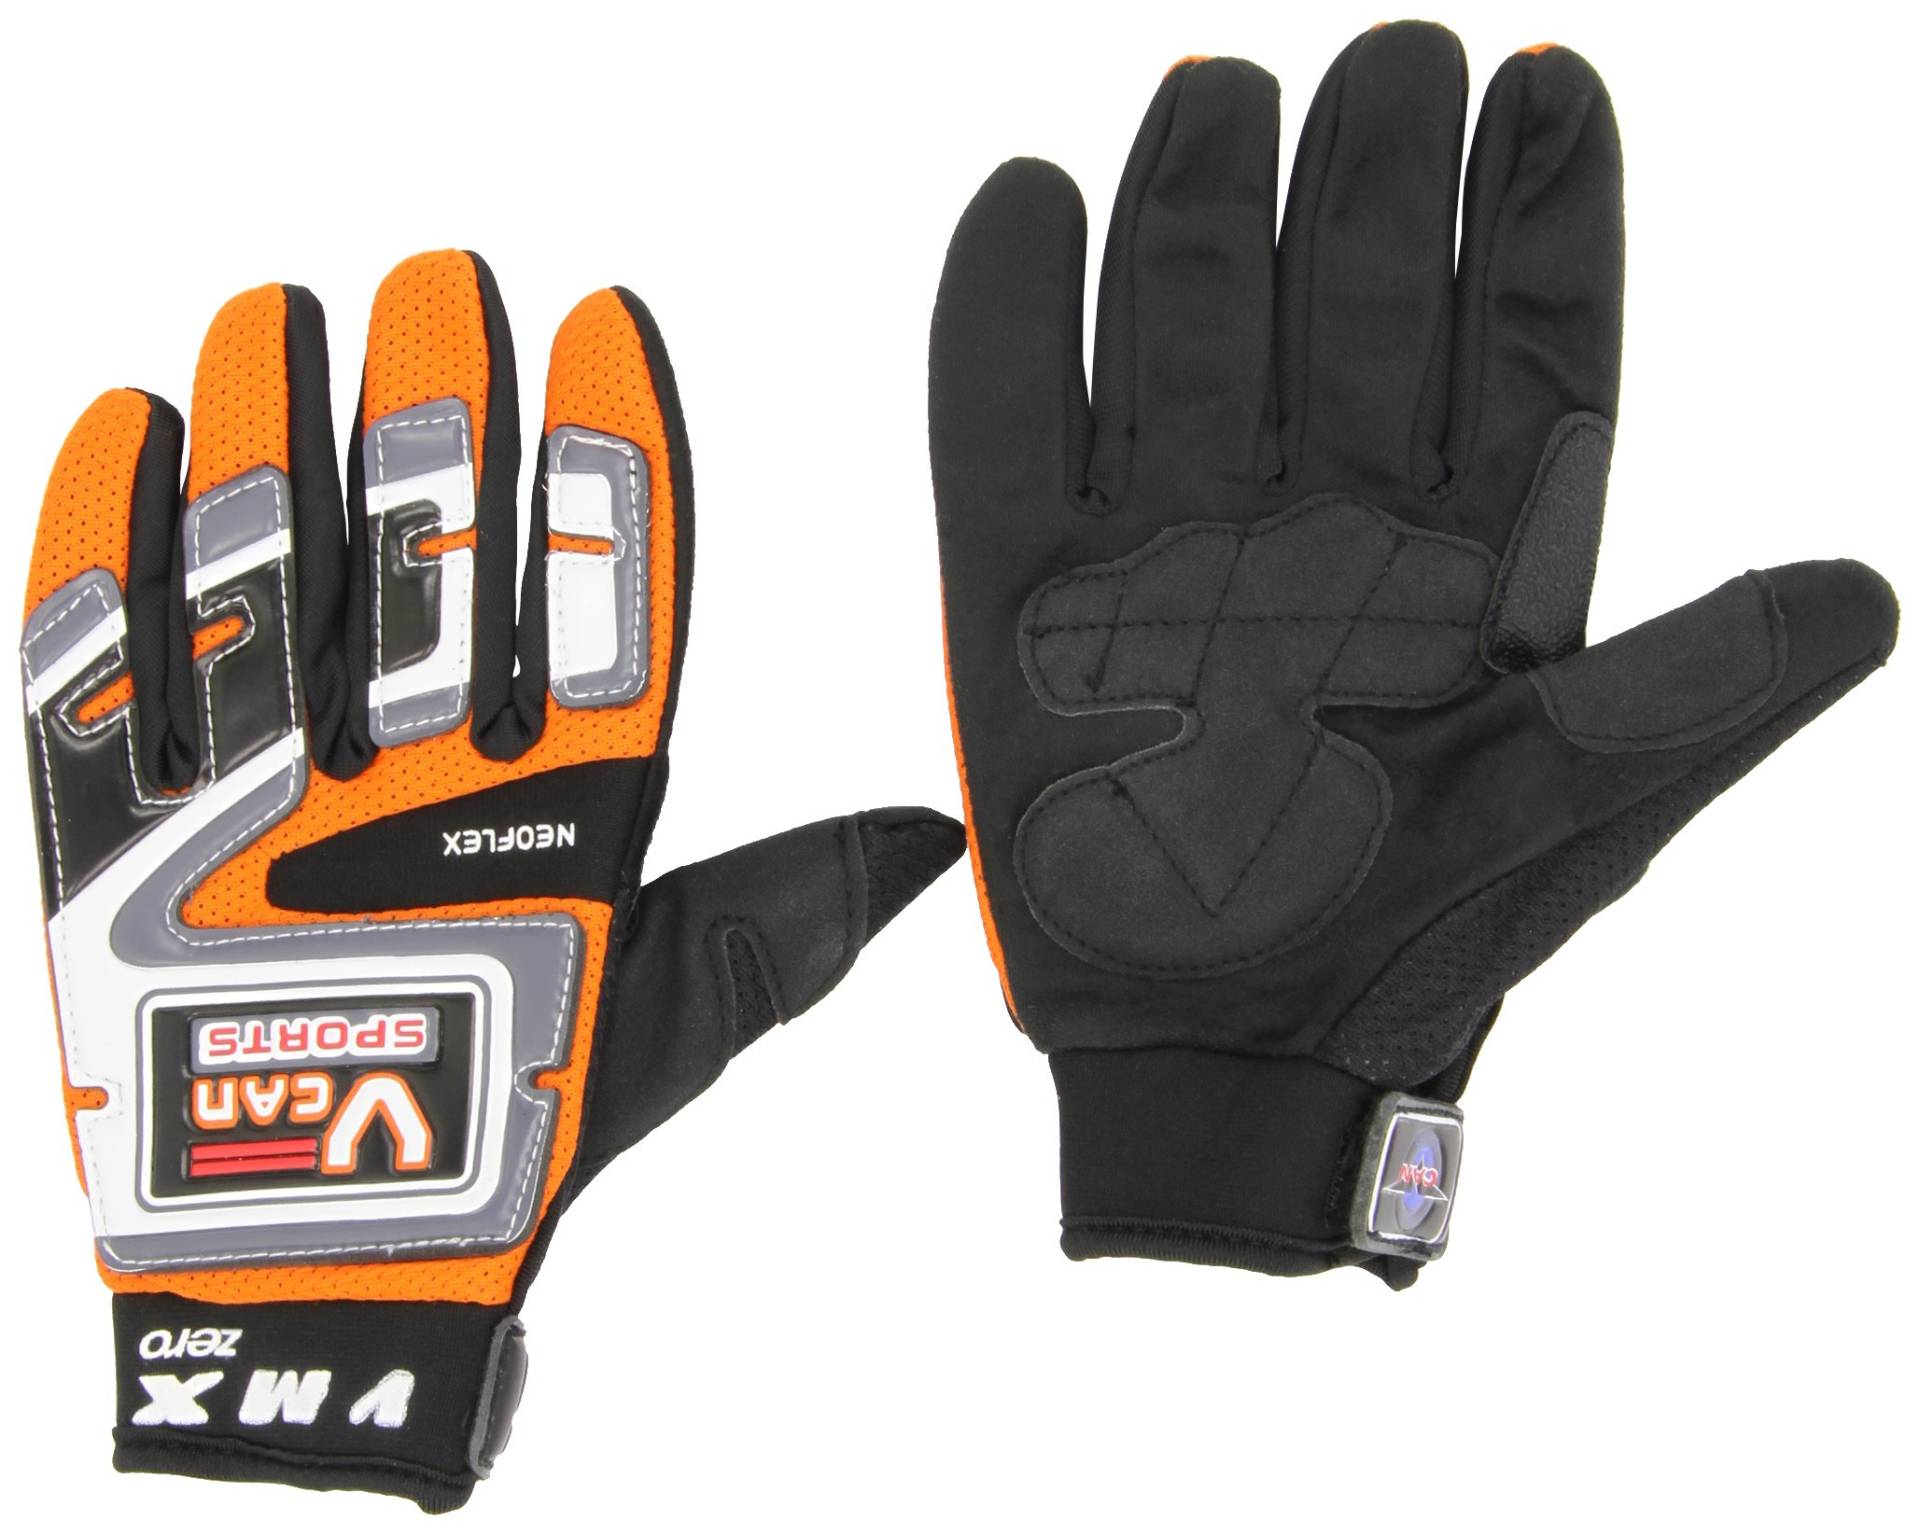 Protectwear MX01-OR-XL Crosshandschuhe, Downhillhandschuhe, BMX-Handschuhe aus Reißfestem Textil mit Kunstoffaufsätzen, Größe XL, Orange/Schwarz/Weiß von protectWEAR